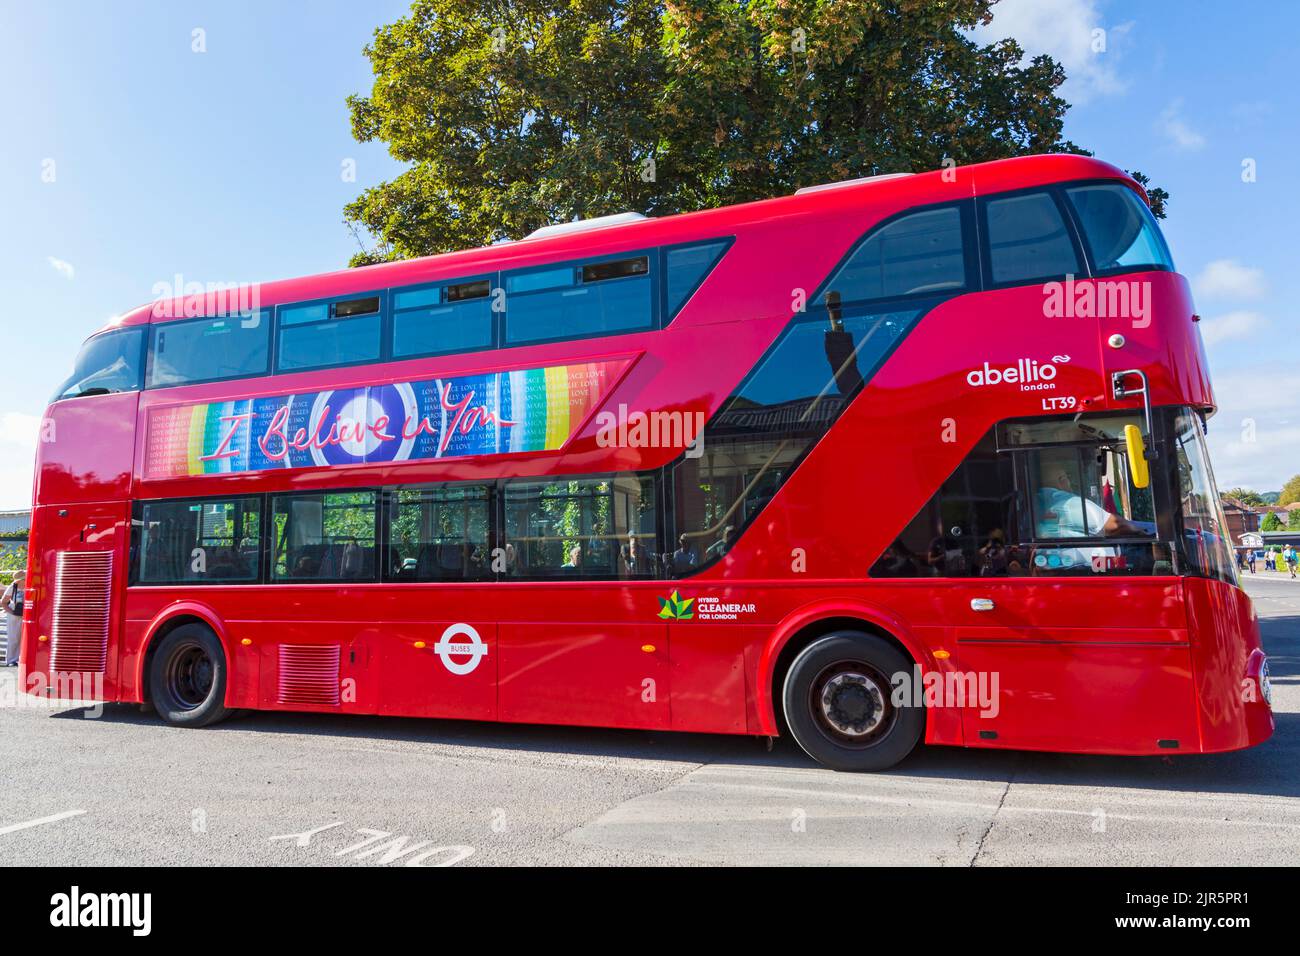 Credo in voi messaggio sul lato di Hybrid CleanerAir per Londra abellio LT39 rosso autobus a due piani Foto Stock